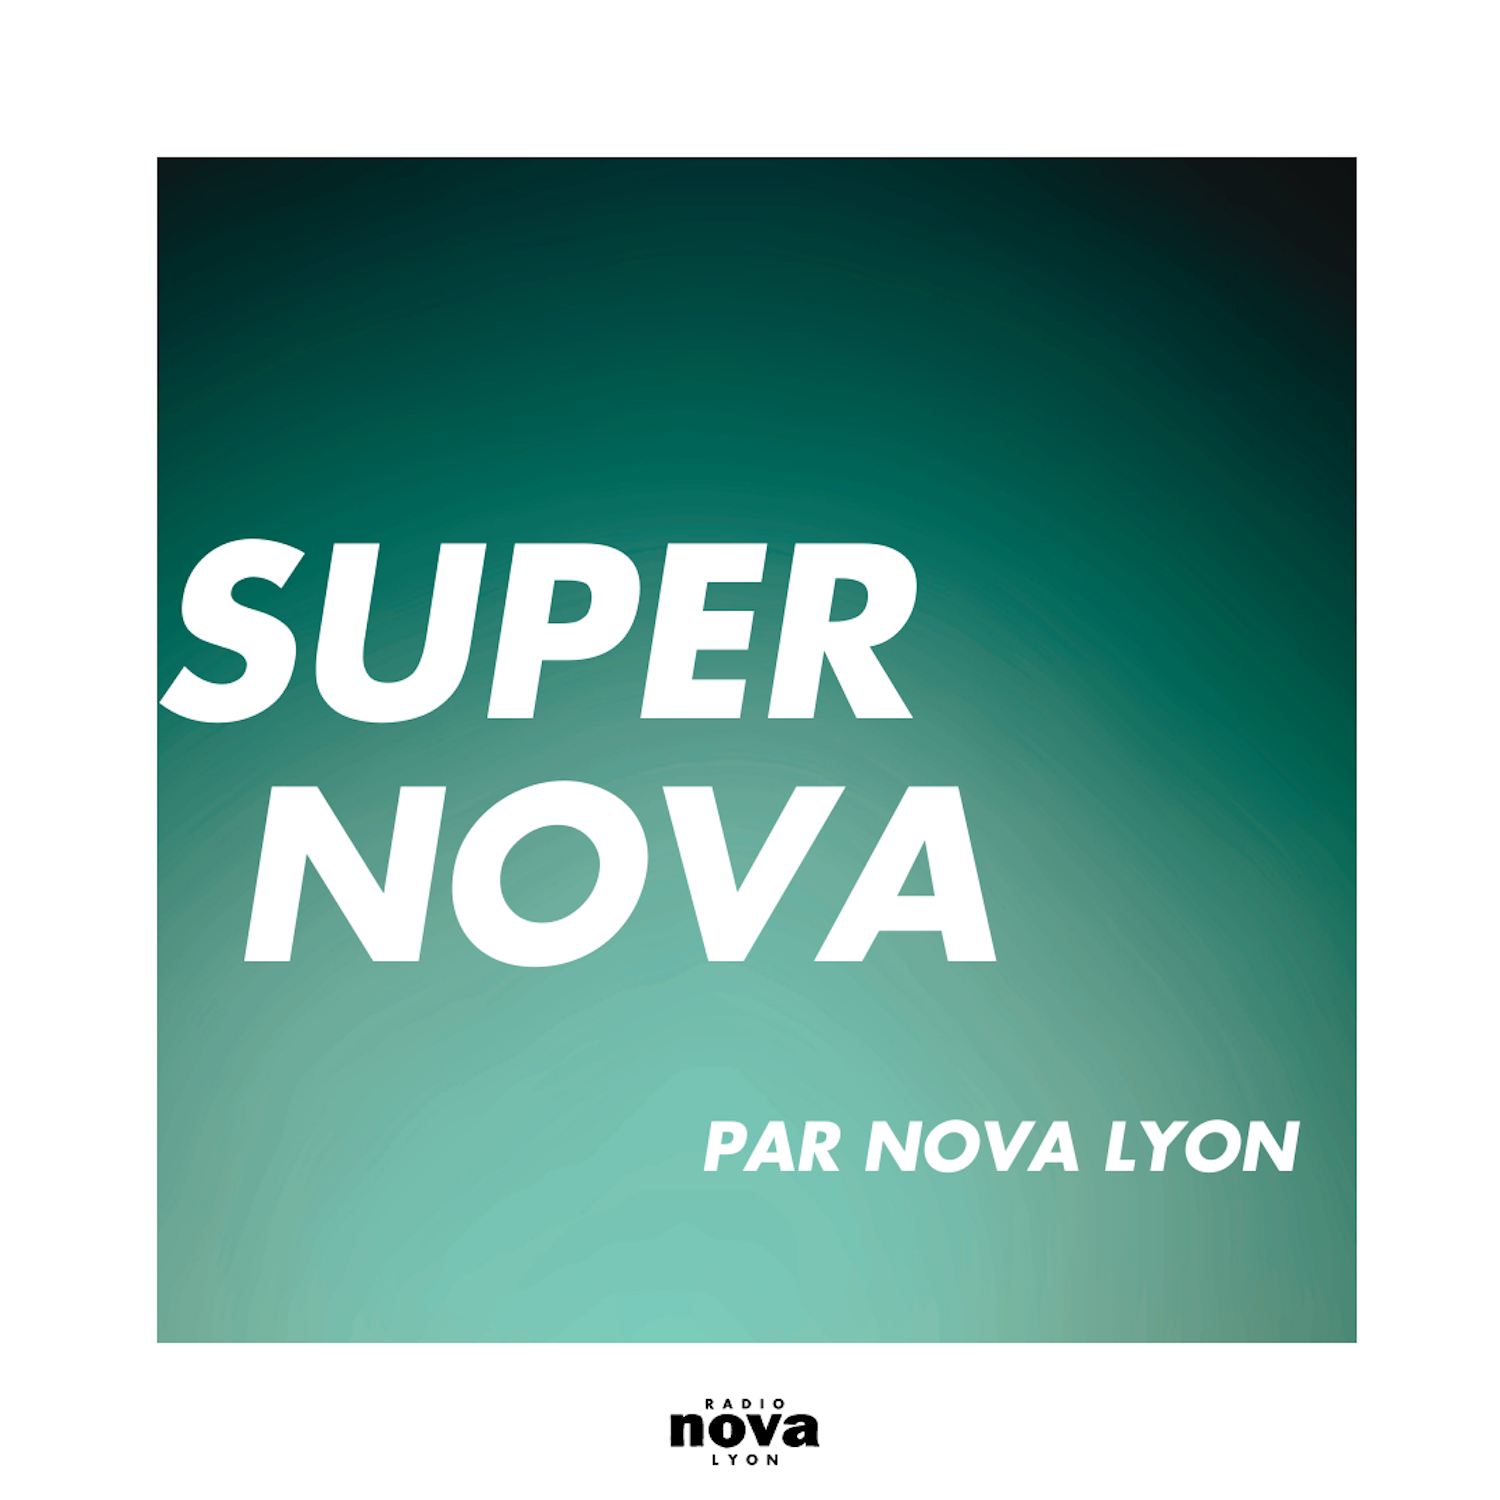 Super Nova Lyon image